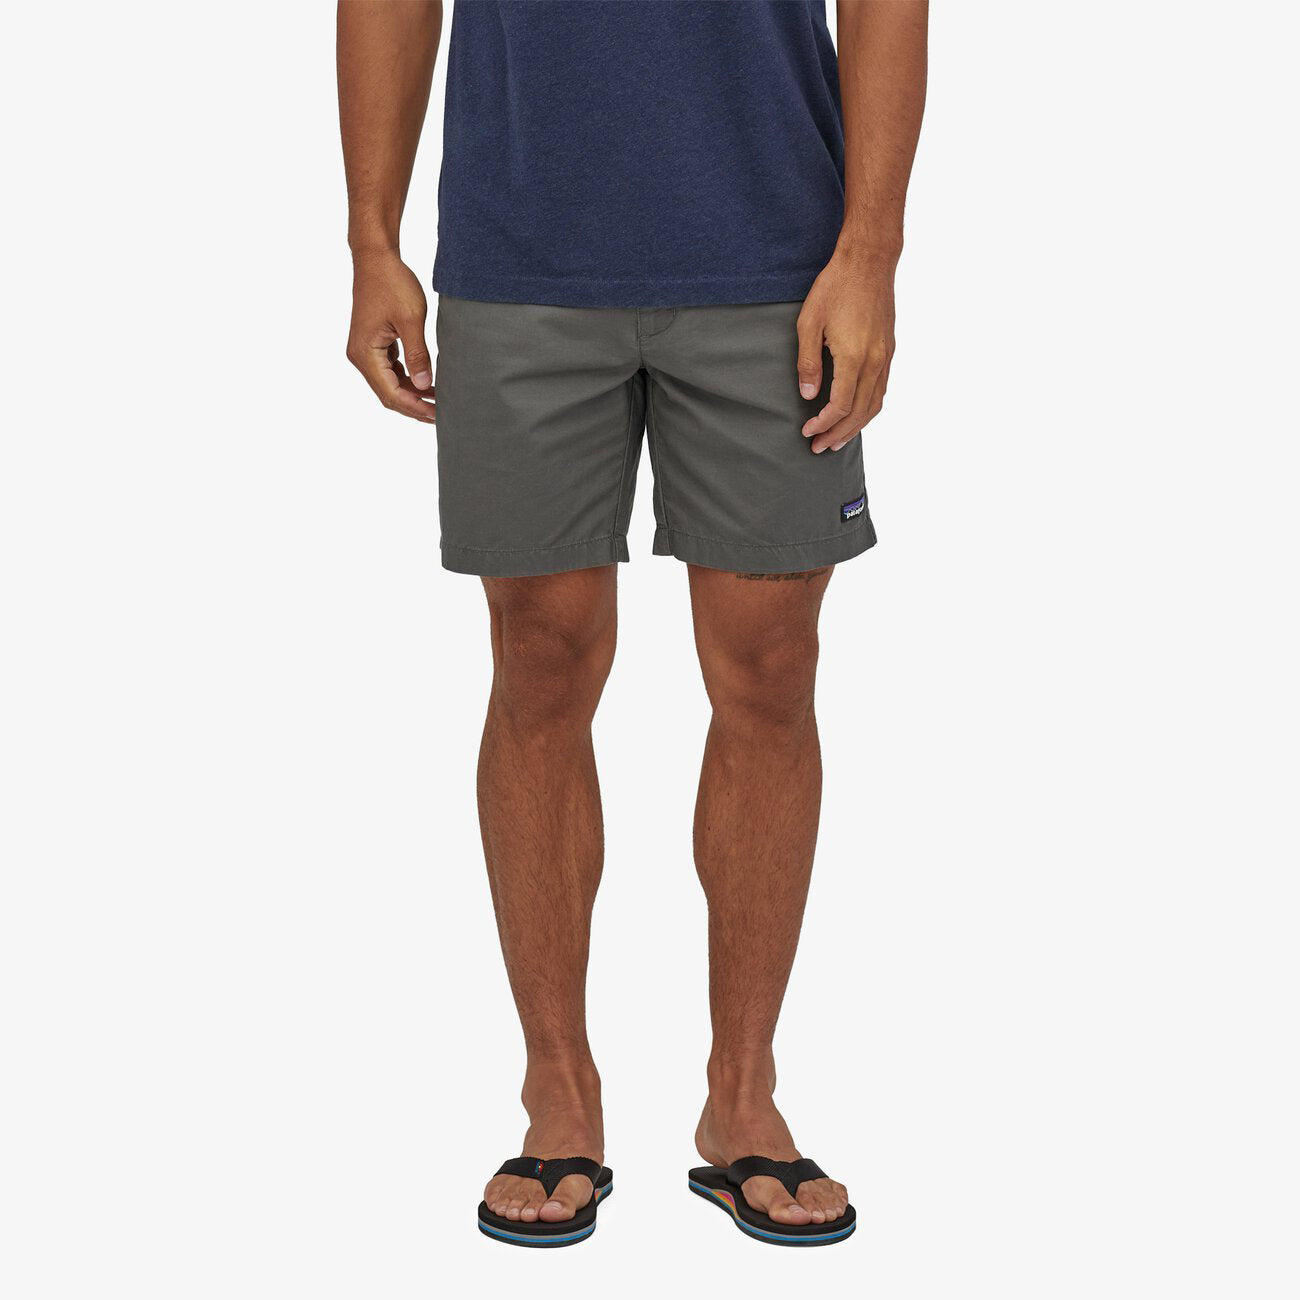 LW All Wear Hemp Shorts 8" - Forge Grey